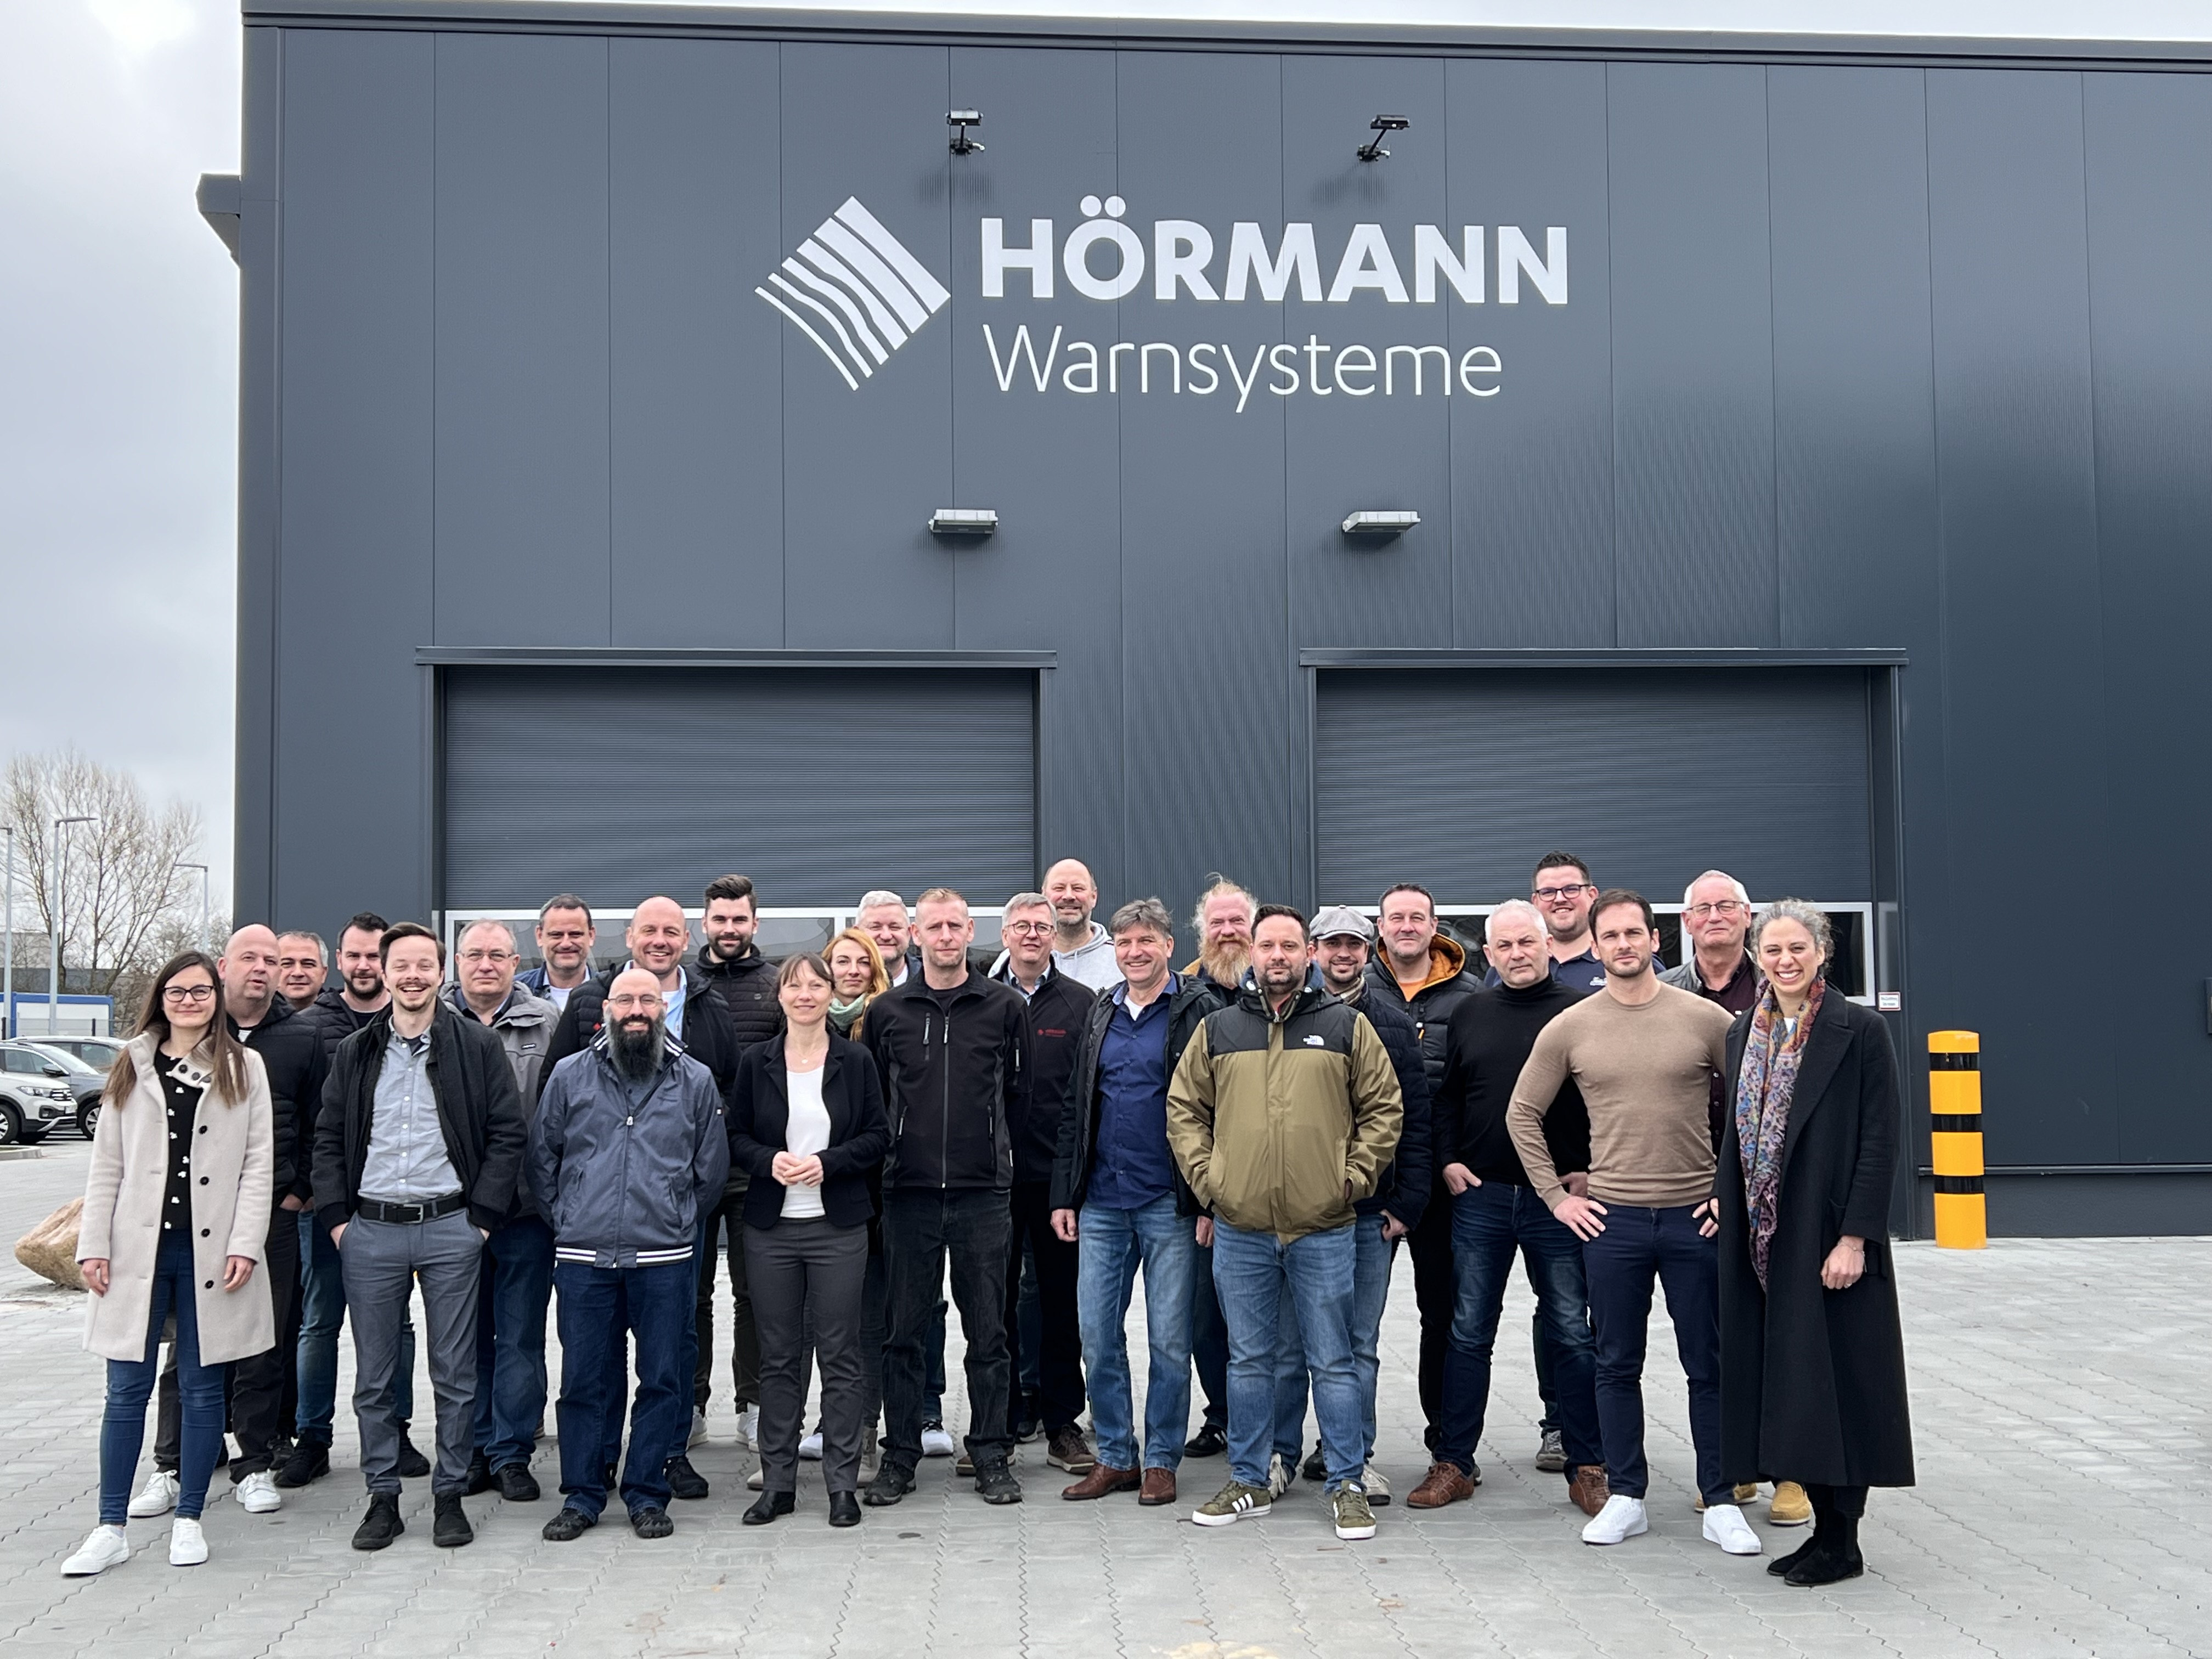 HÖRMANN's siren expertes met in Stade, Germany